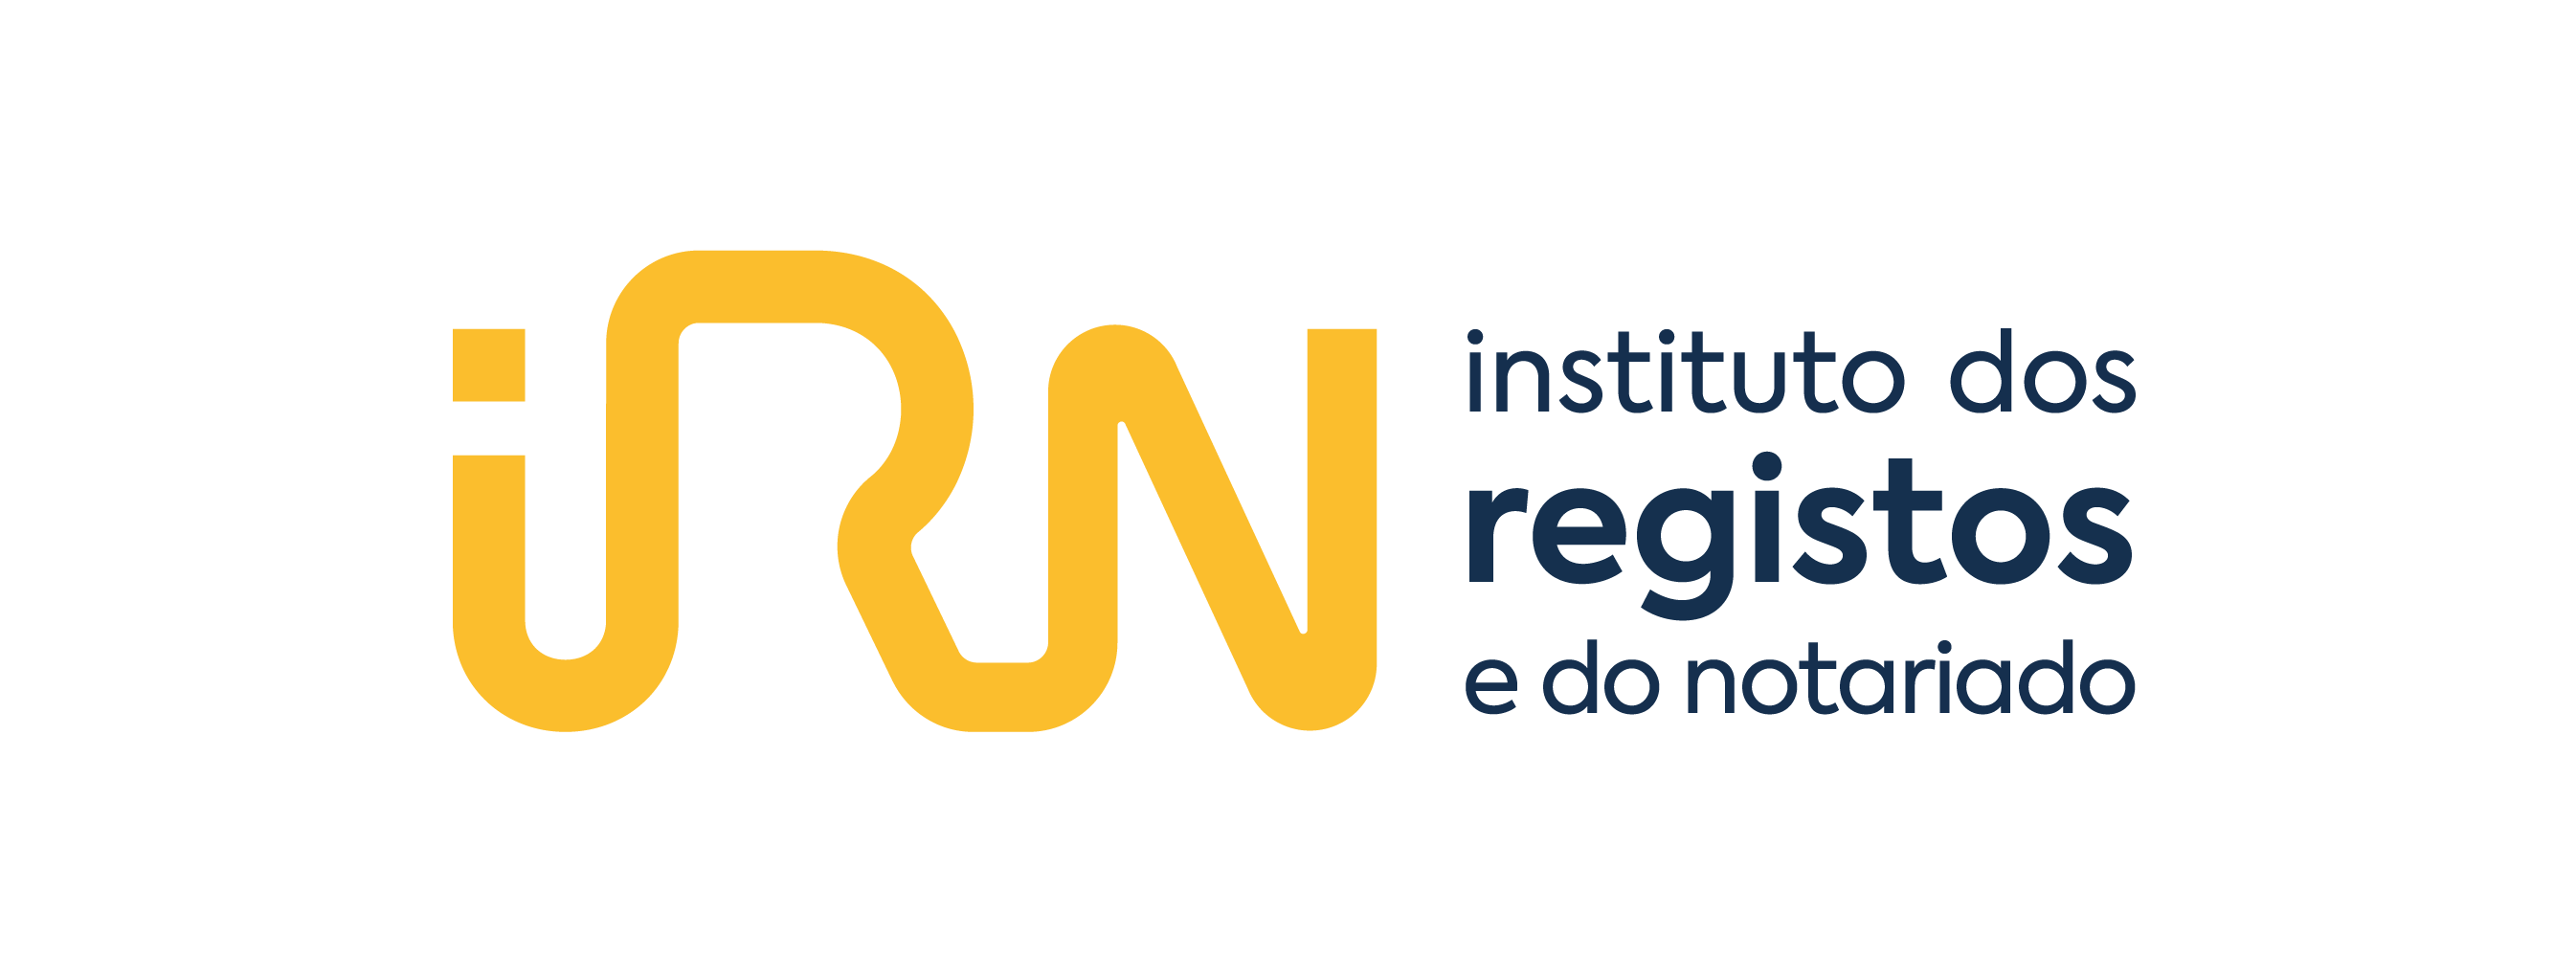 Logotipo Pedir o registo civil da regulação das responsabilidades parentais - ePortugal.gov.pt